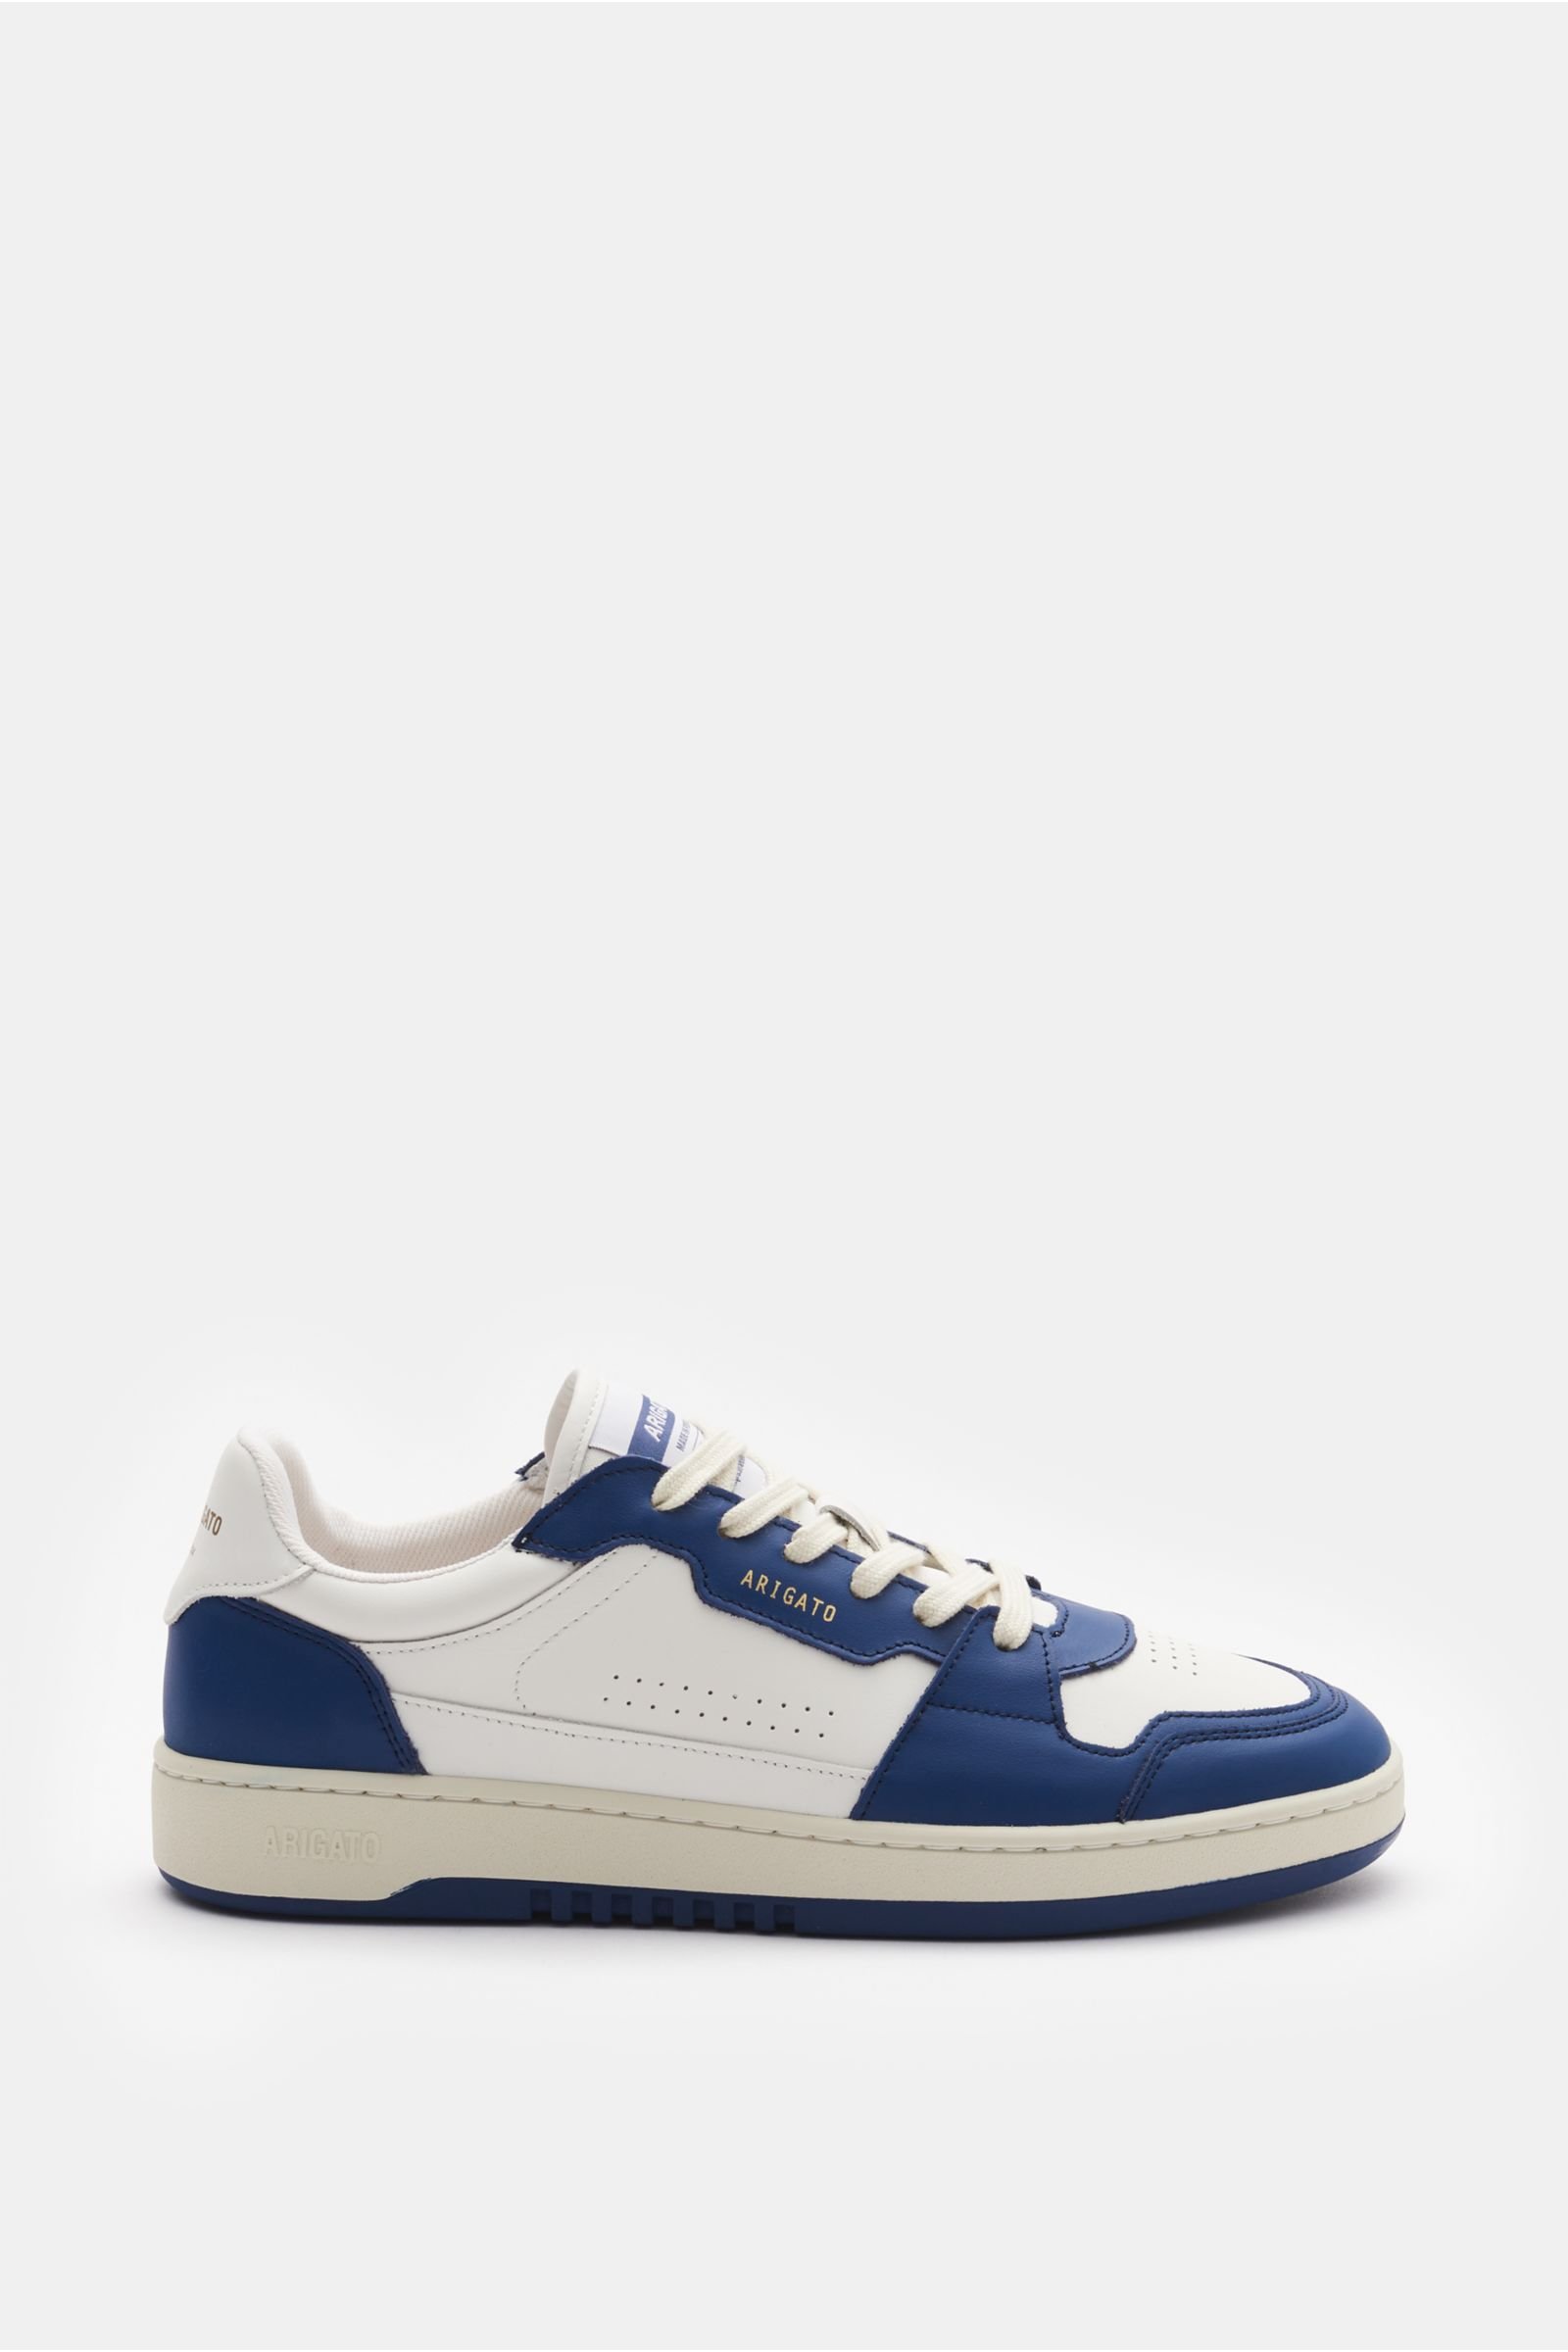 Sneakers 'Dice Lo' dark blue/white